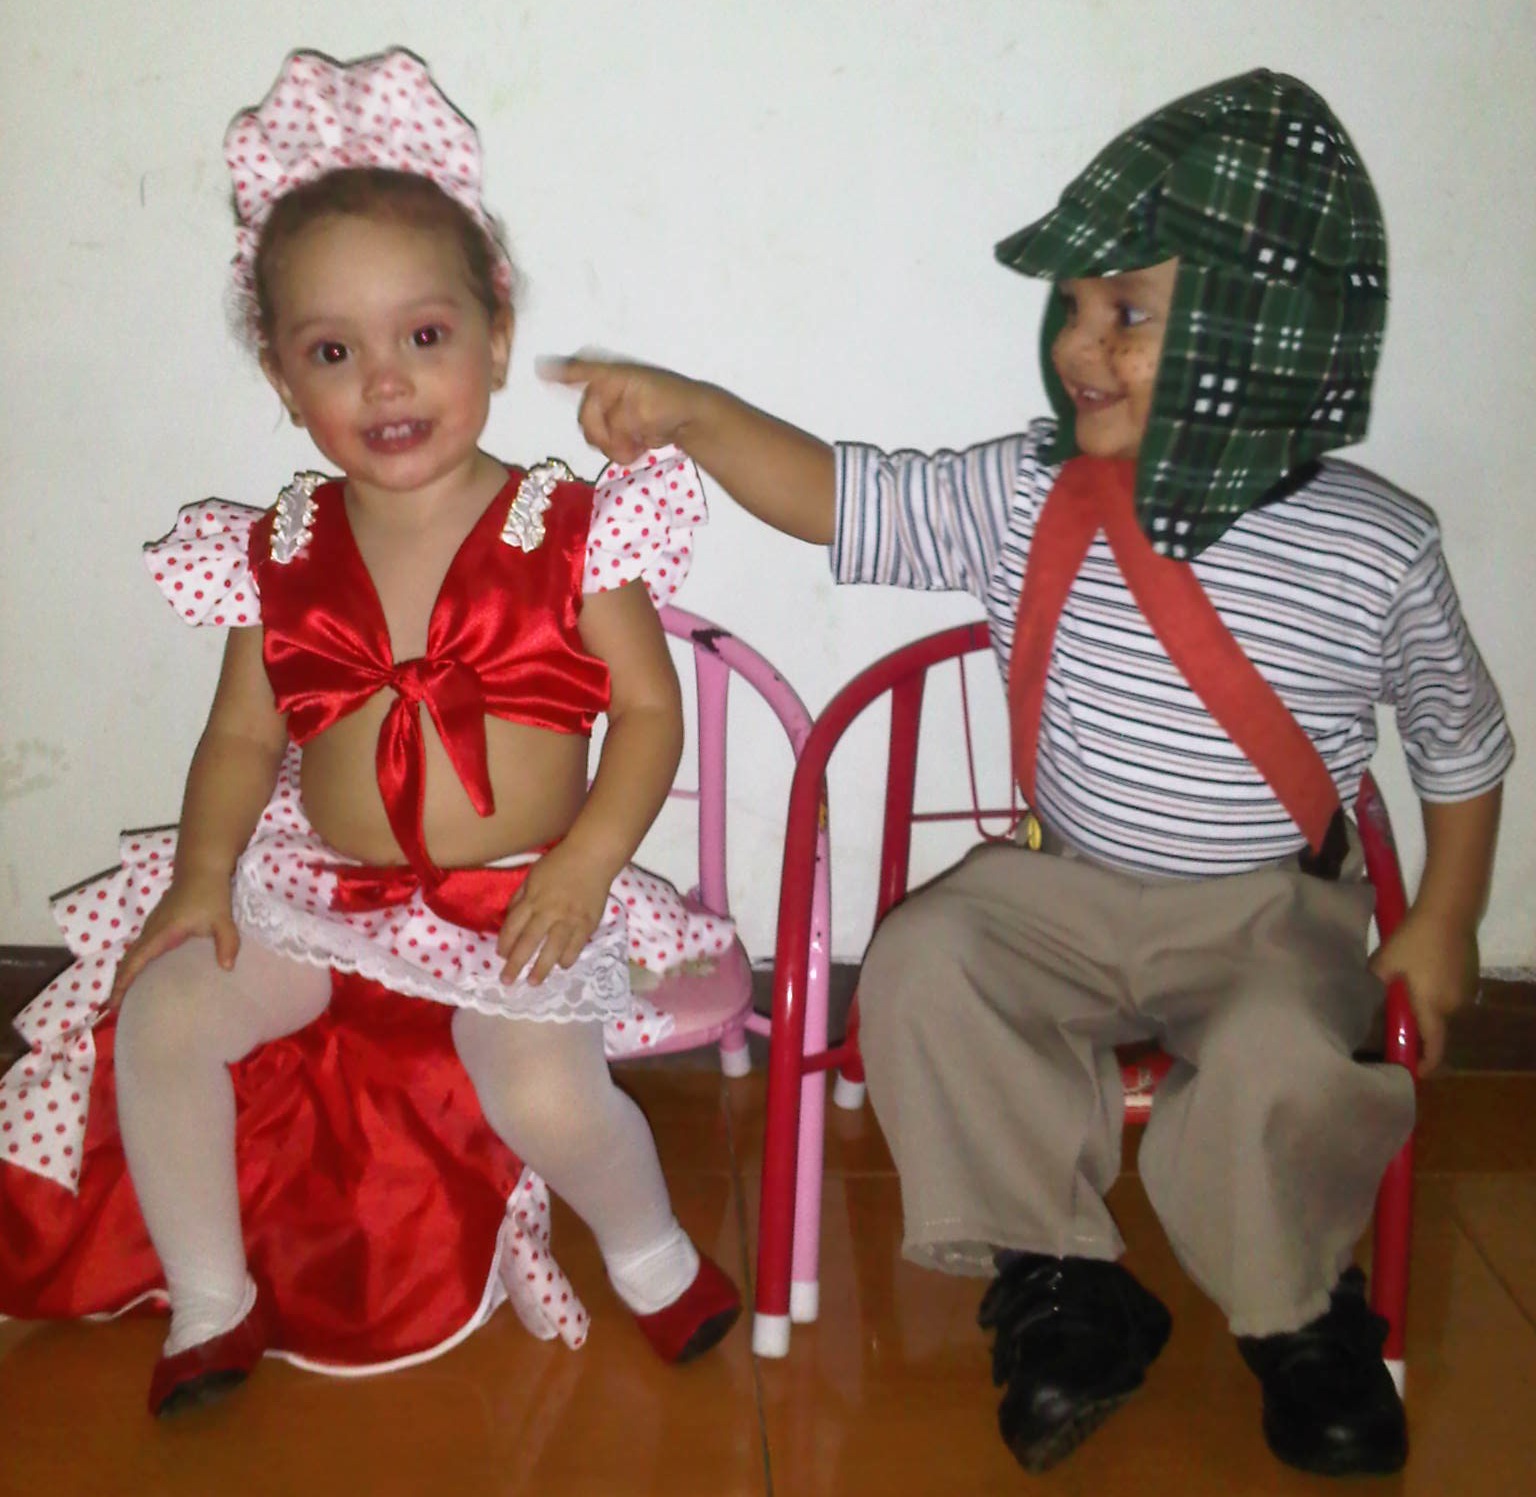 Los hermanitos José Alejandro y Kerly Antonella Reggio como el "Chavo del 8" y la pequeña "Rumbera".